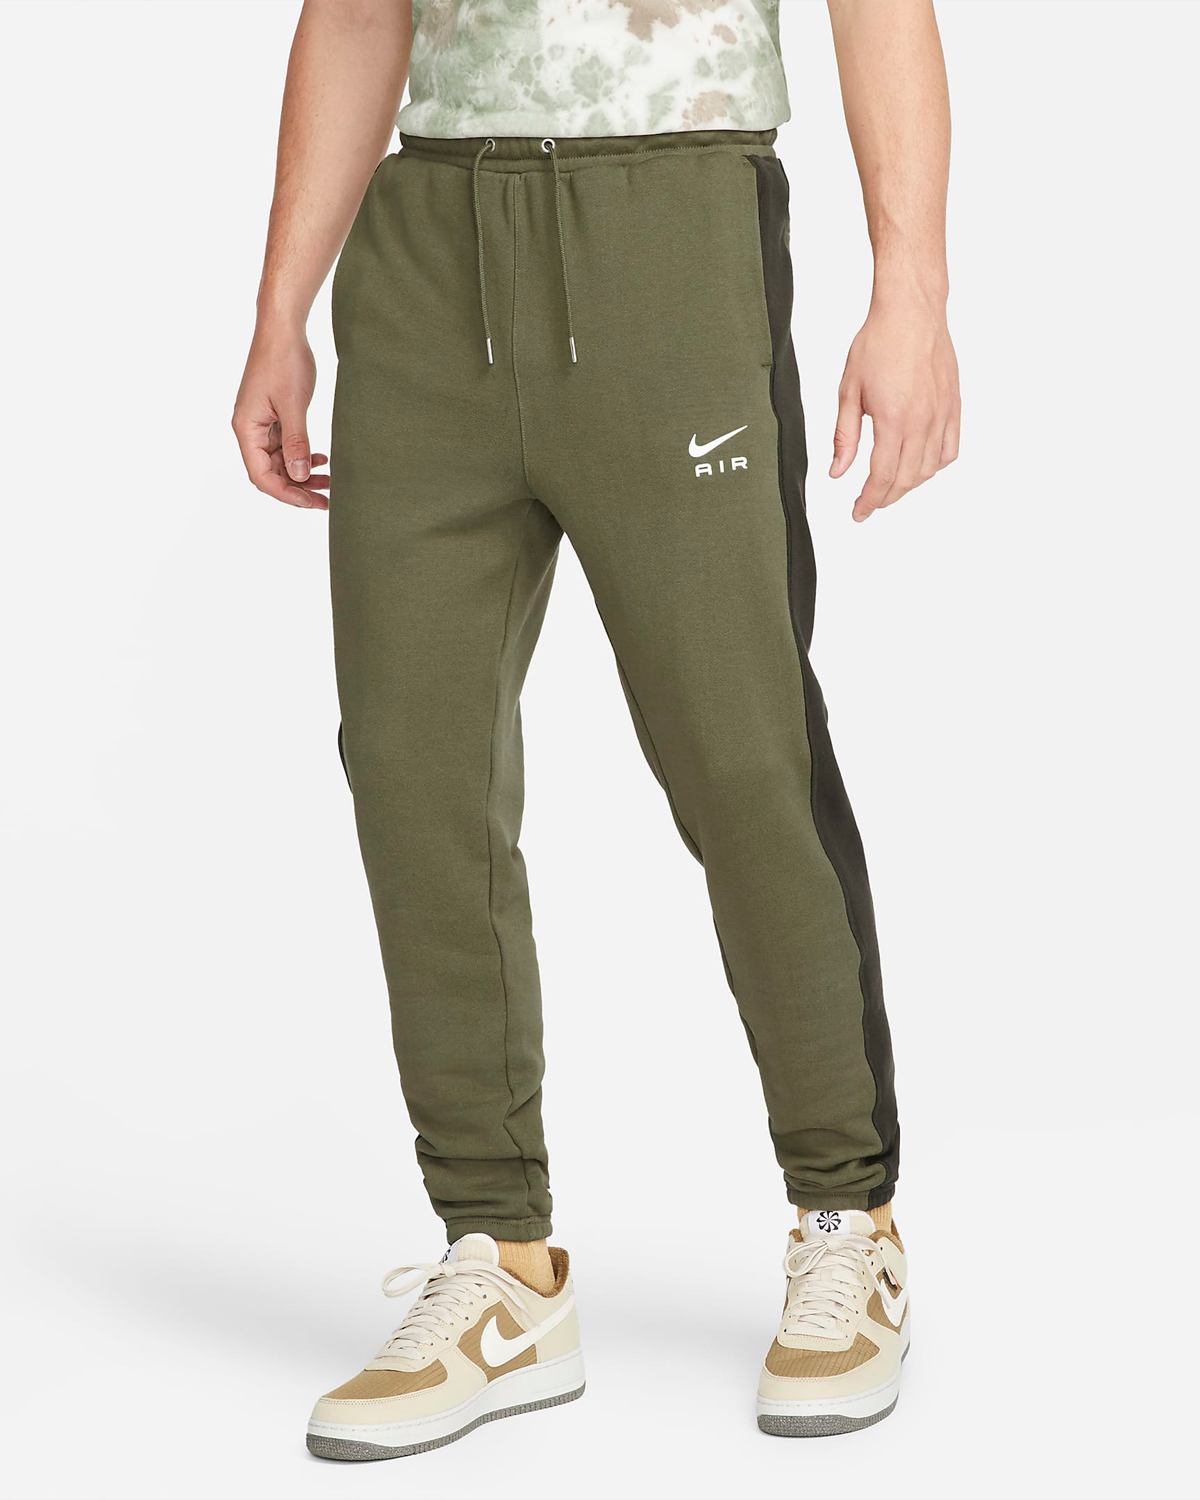 Nike-Air-Jogger-Pants-Olive-Green-1